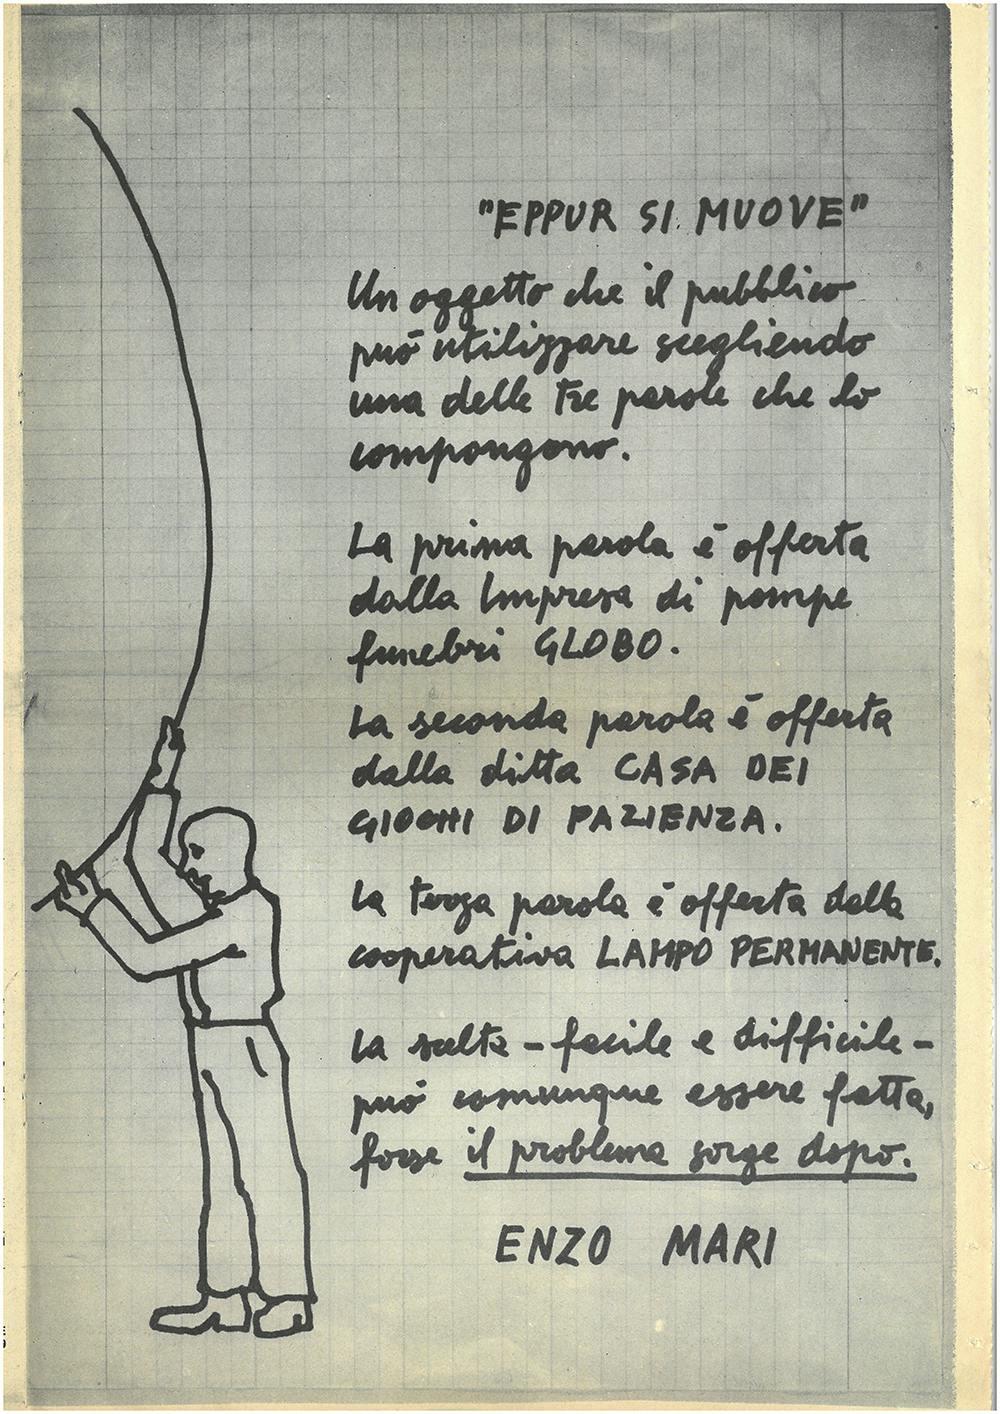 Drawing by Enzo Mari published in the catalogue Sistemazione del design, raccolta del design, XVI Triennale Milano, 1979 © Triennale Milano – Archivi 